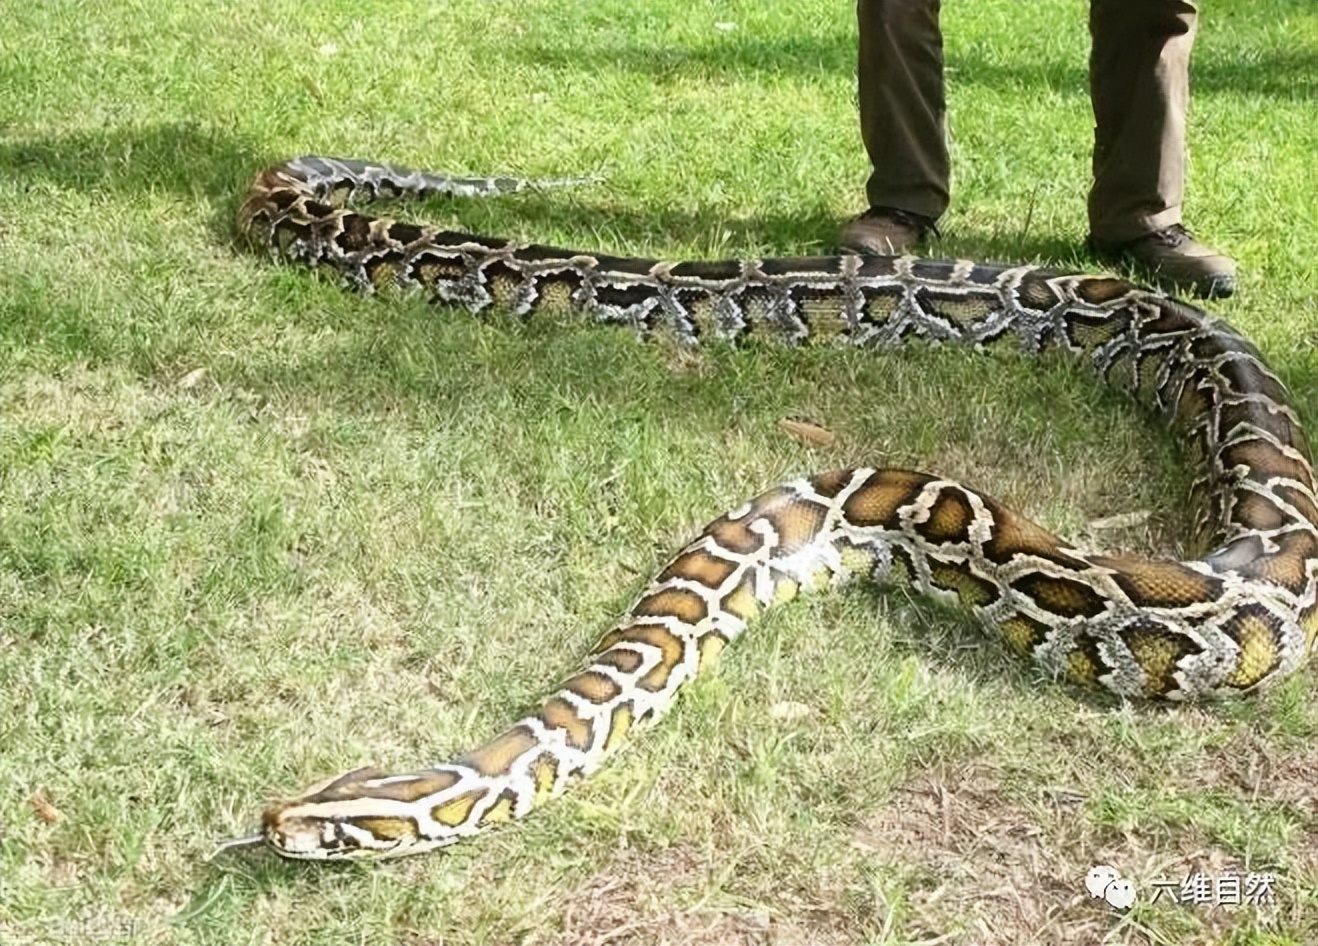 蟒蛇食人事件(令人不寒而栗！长约7米大蟒蛇吞食一位女士，连生还机会都没有？)